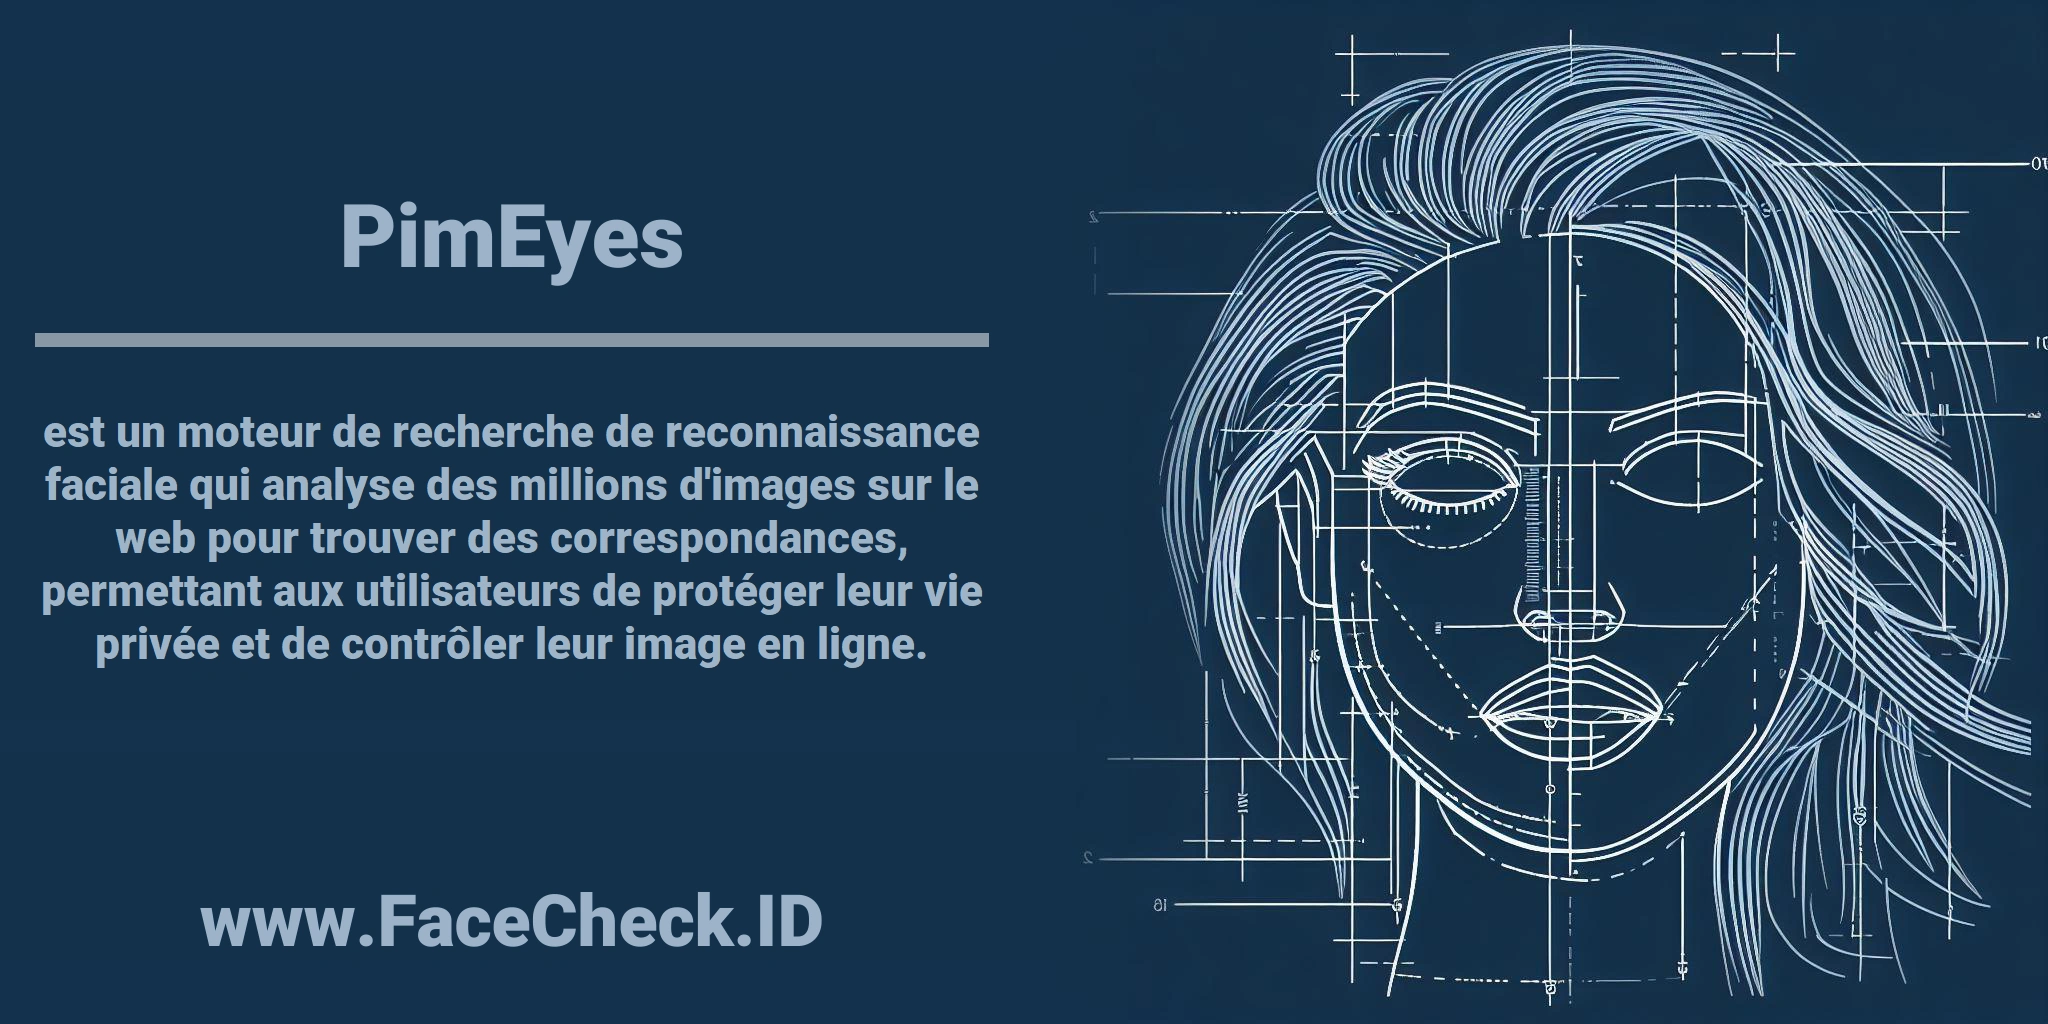 <b>PimEyes</b> est un moteur de recherche de reconnaissance faciale qui analyse des millions d'images sur le web pour trouver des correspondances, permettant aux utilisateurs de protéger leur vie privée et de contrôler leur image en ligne.